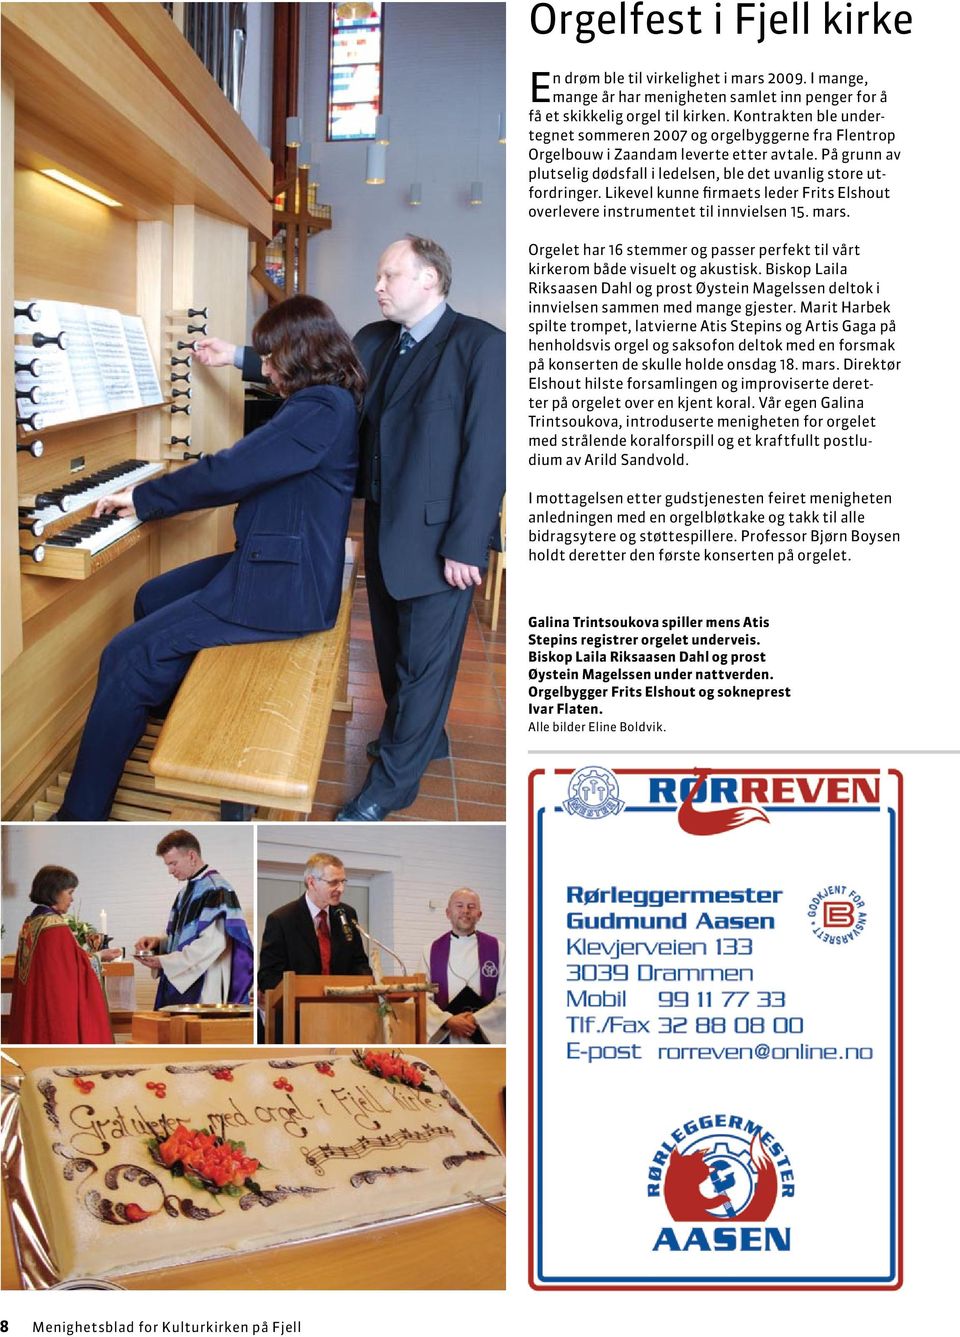 Likevel kunne firmaets leder Frits Elshout overlevere instrumentet til innvielsen 15. mars. Orgelet har 16 stemmer og passer perfekt til vårt kirkerom både visuelt og akustisk.